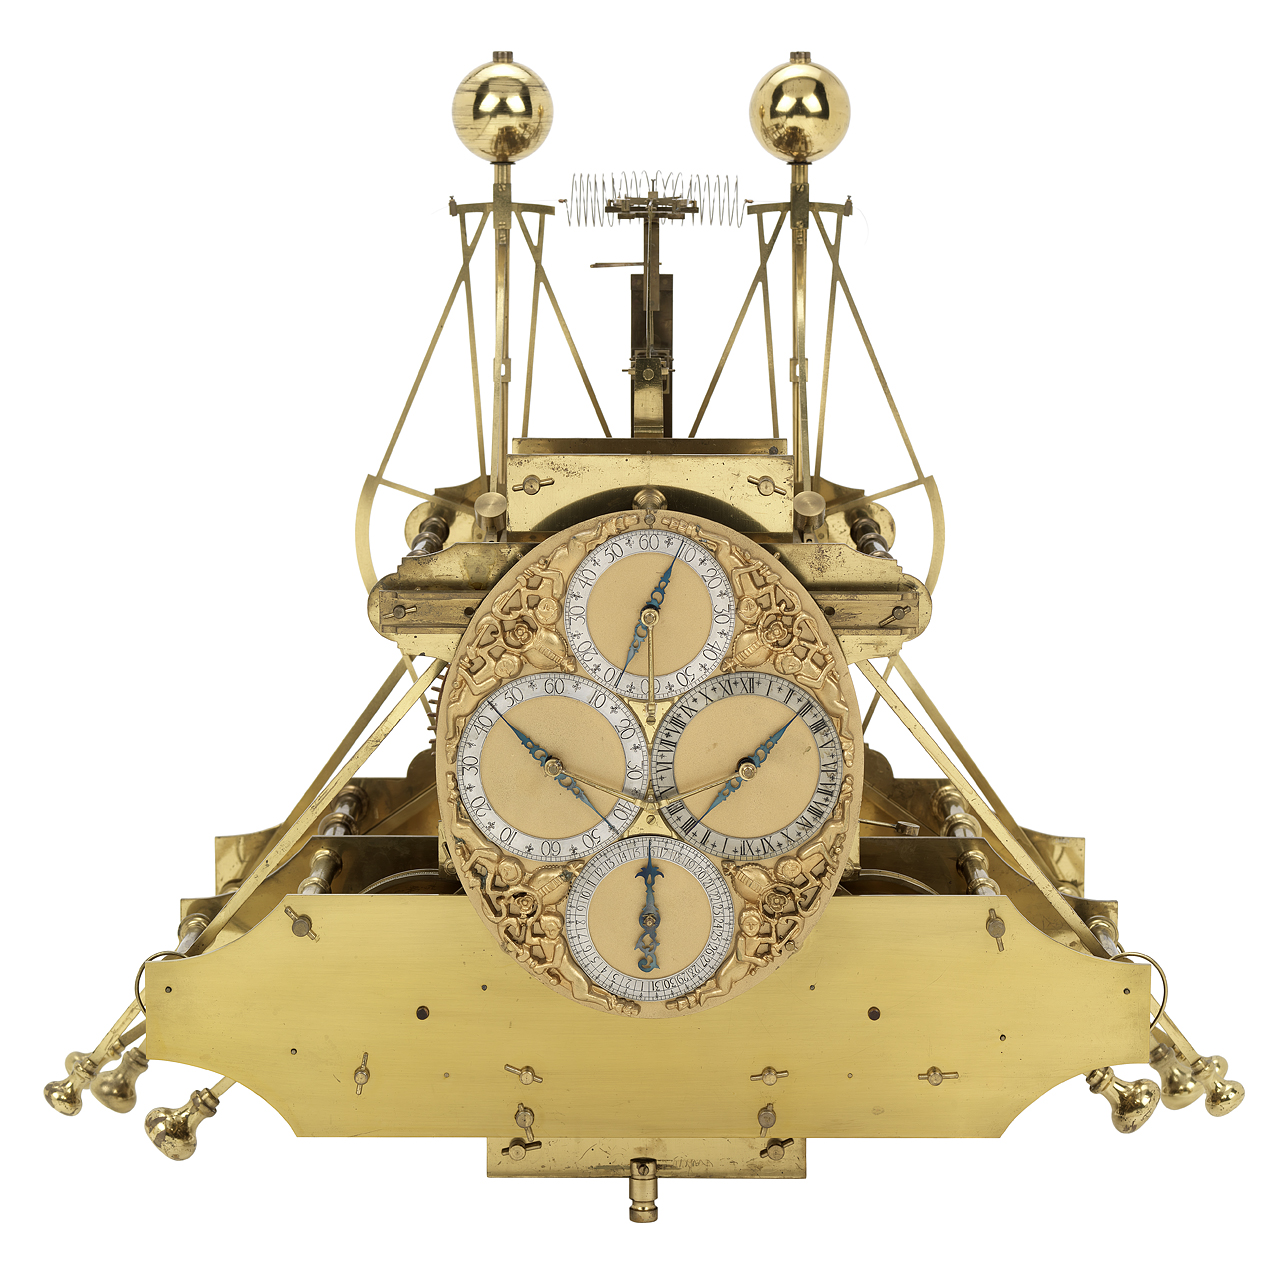 Вот так выглядели первые хронометры Харрисона. Пружинный маятник и масса противовесов. И эта штука занимает целую капюту, подобно первым компьютерам. 